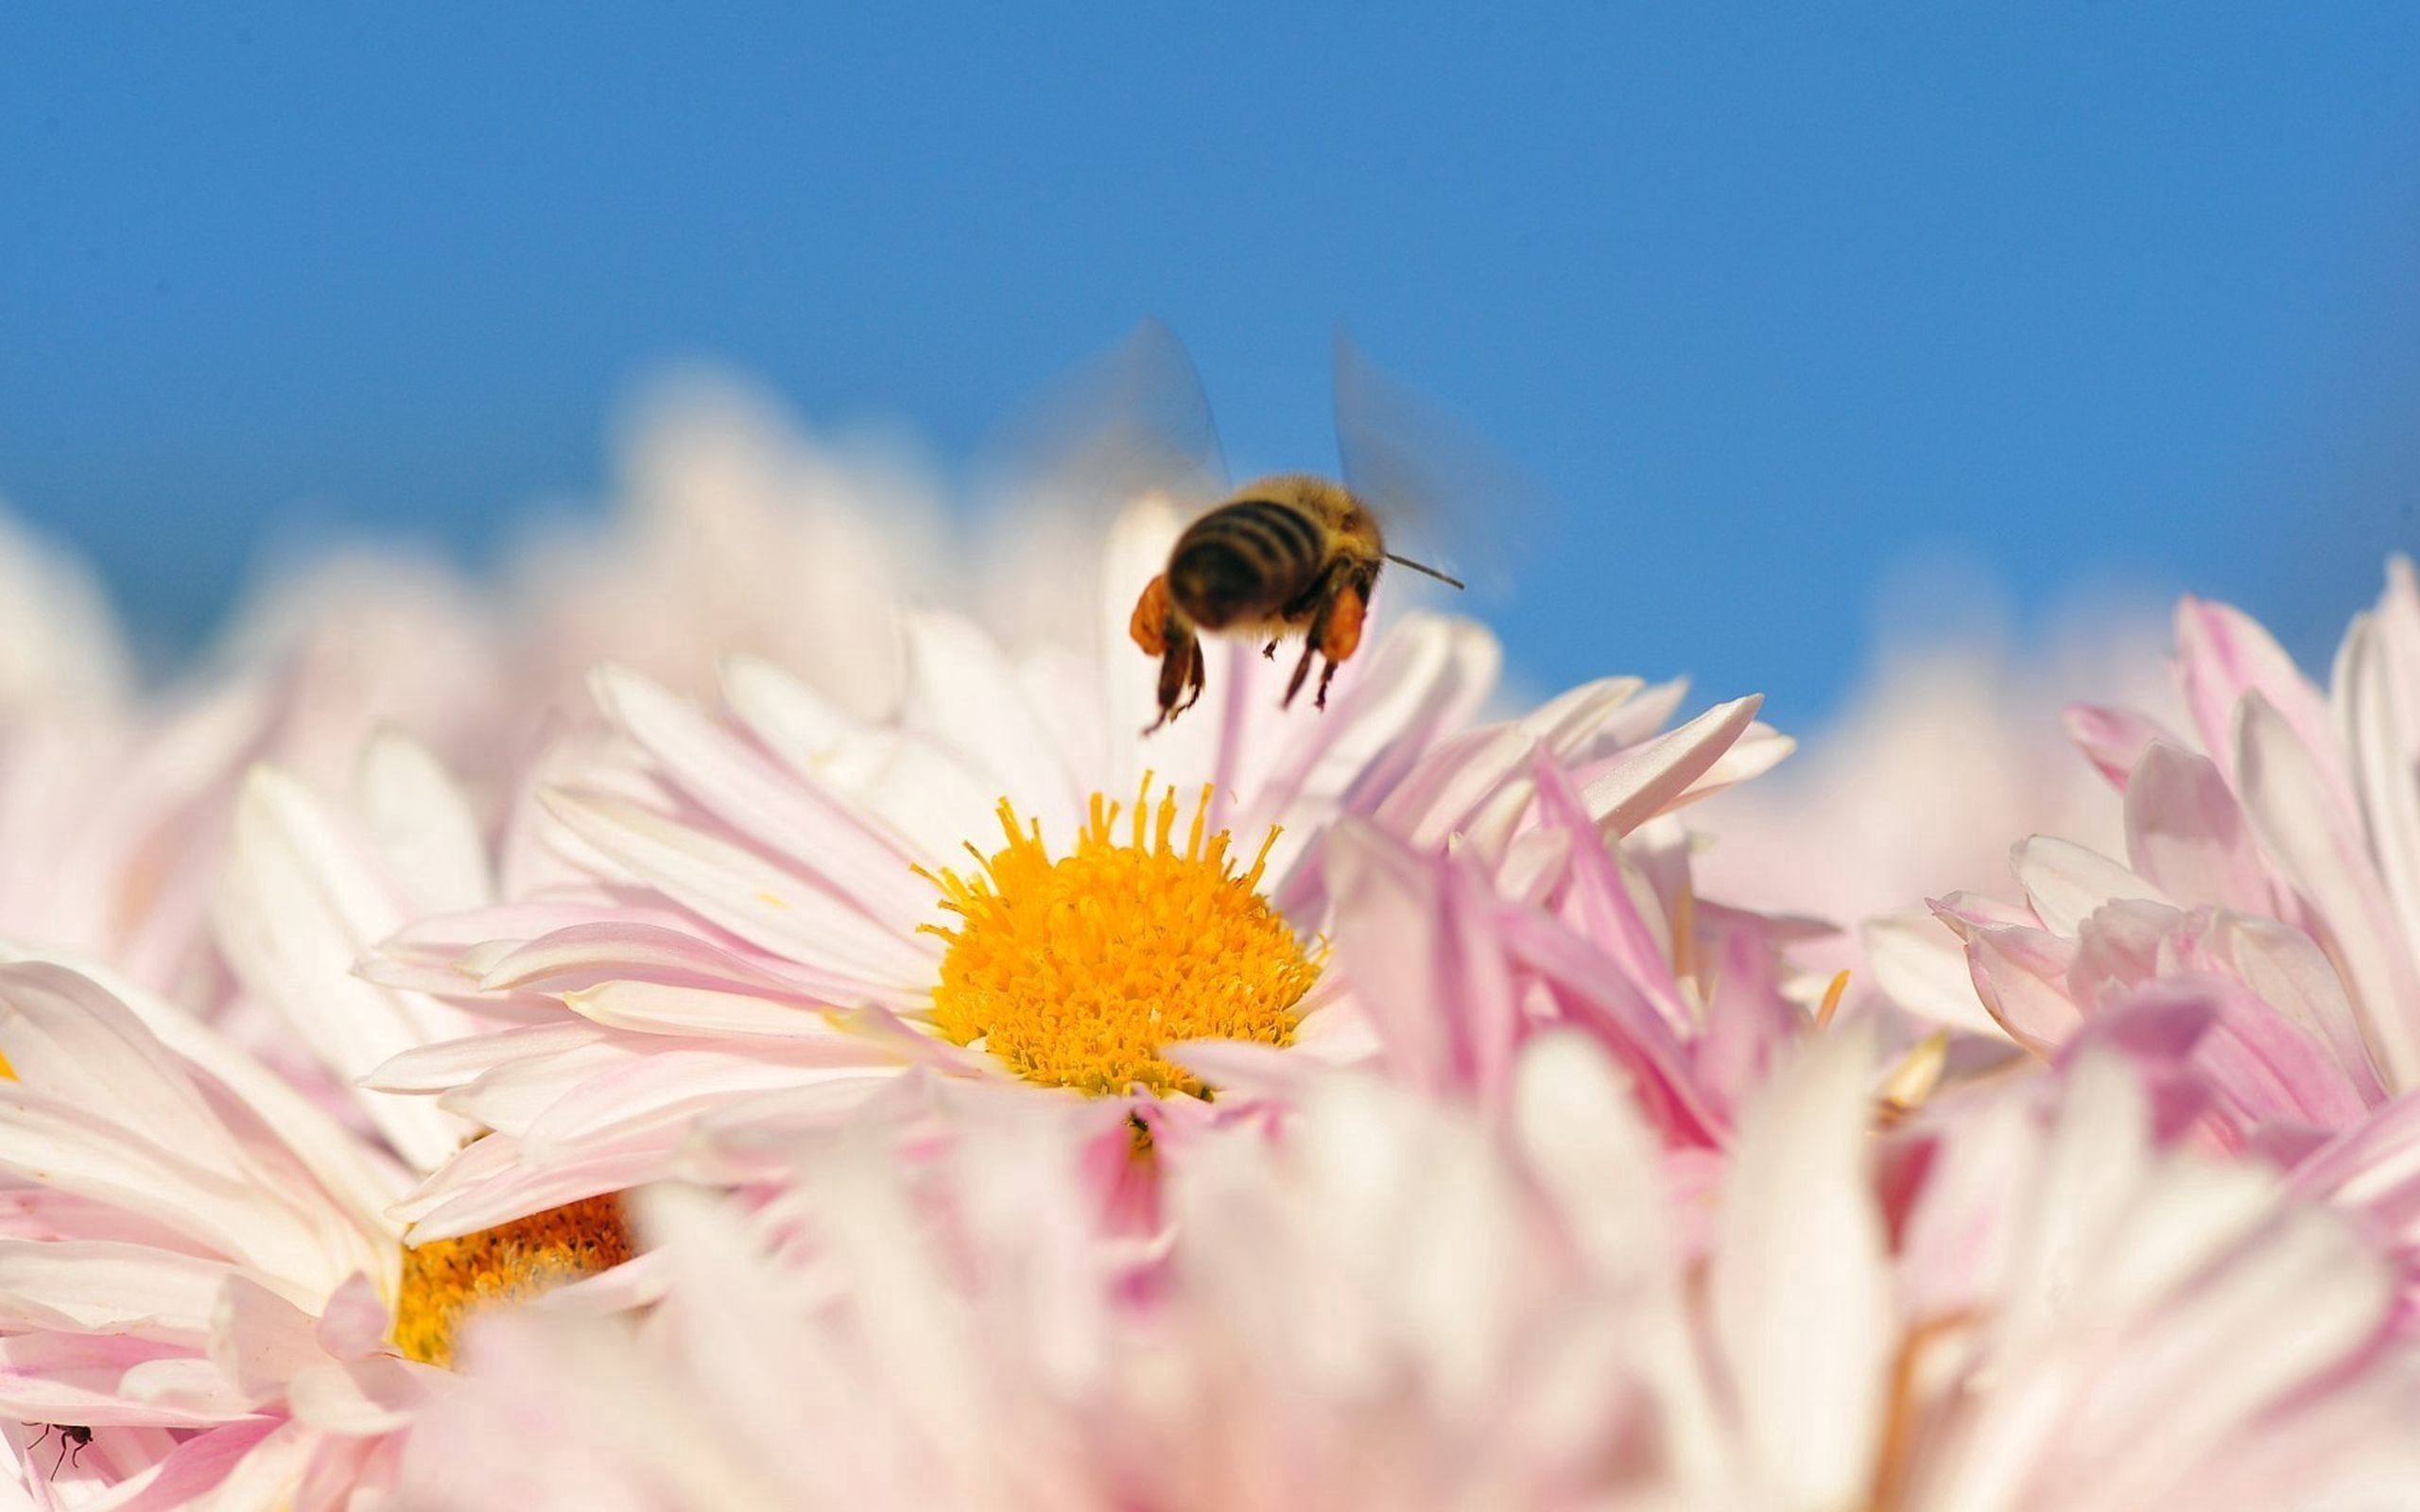 Скачать обои бесплатно Опыление, Полет, Макро, Пчела, Цветок, Насекомое картинка на рабочий стол ПК